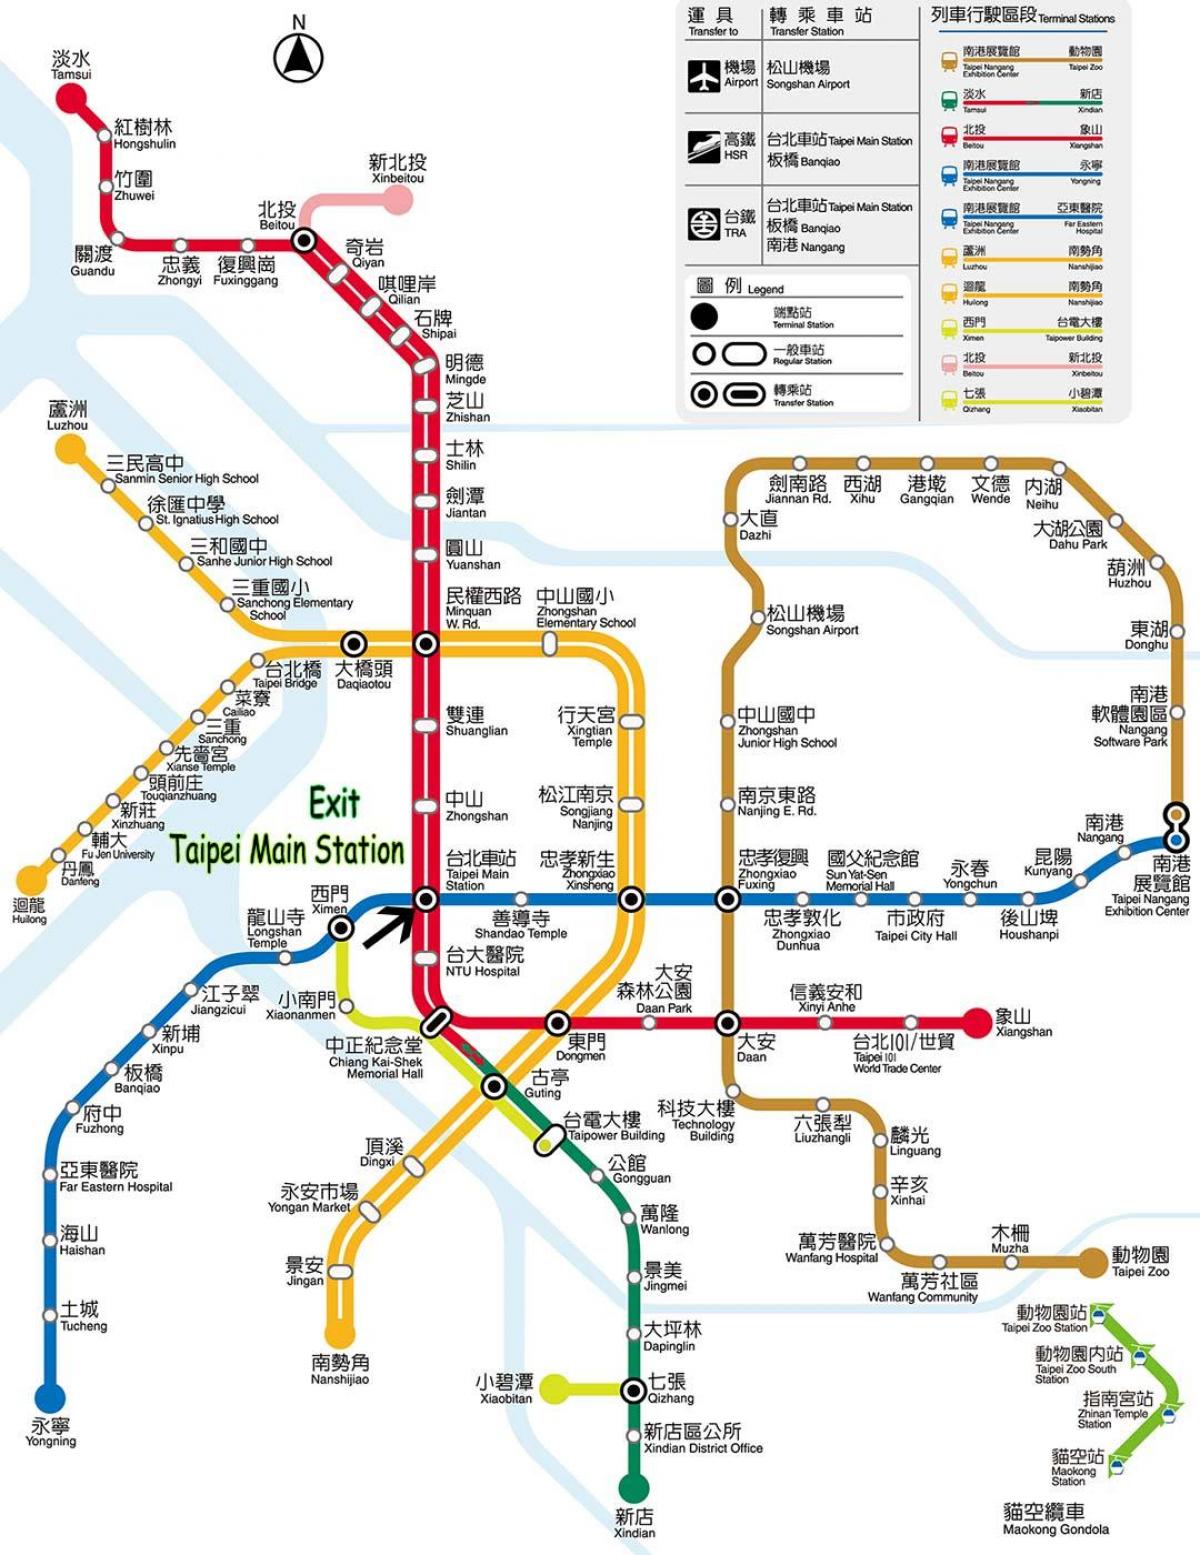 bản đồ của Đài bắc trạm xe buýt